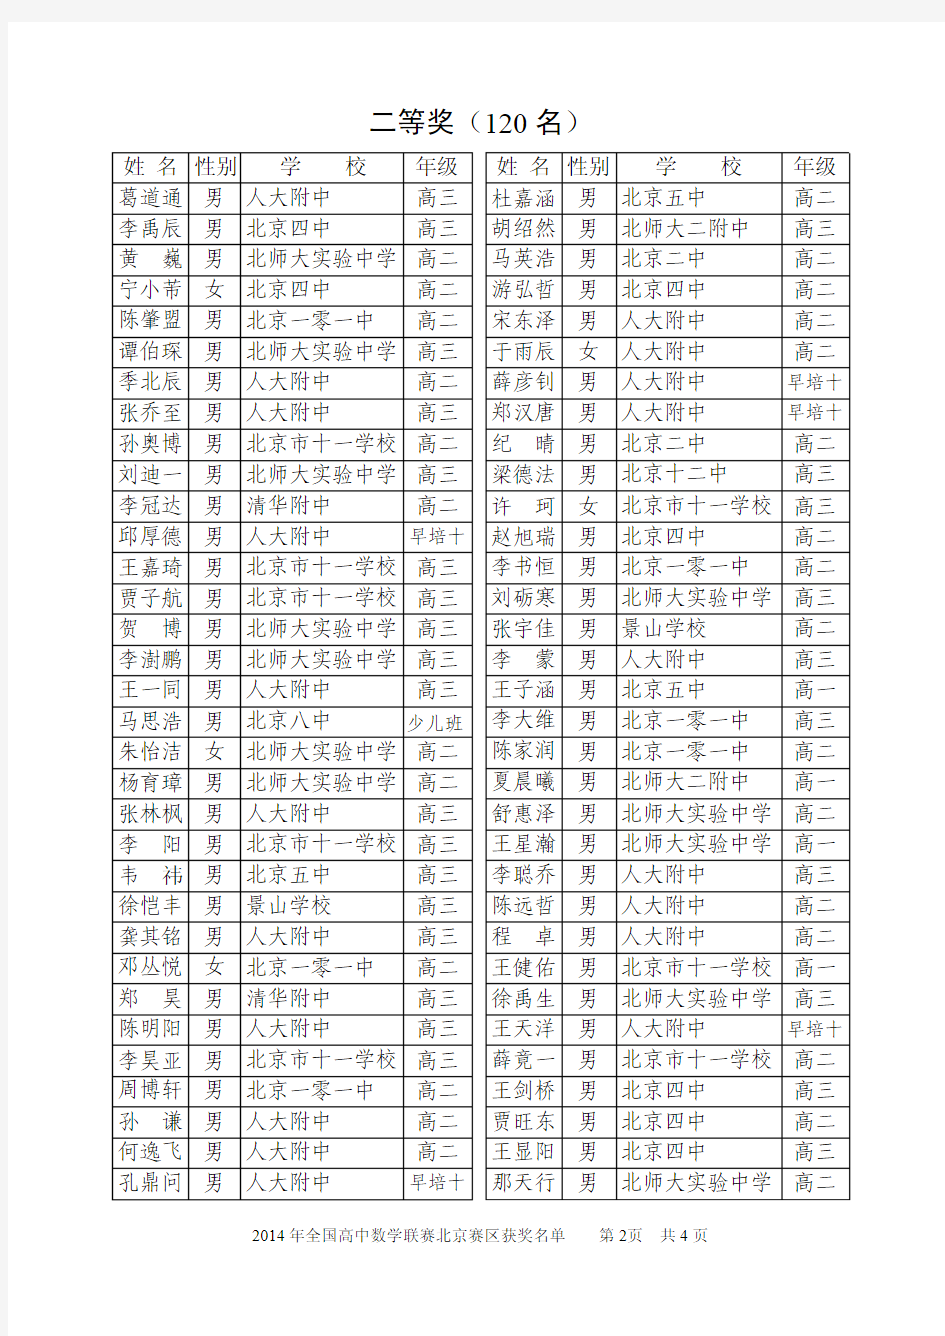 2014年全国高中数学联赛北京赛区获奖名单